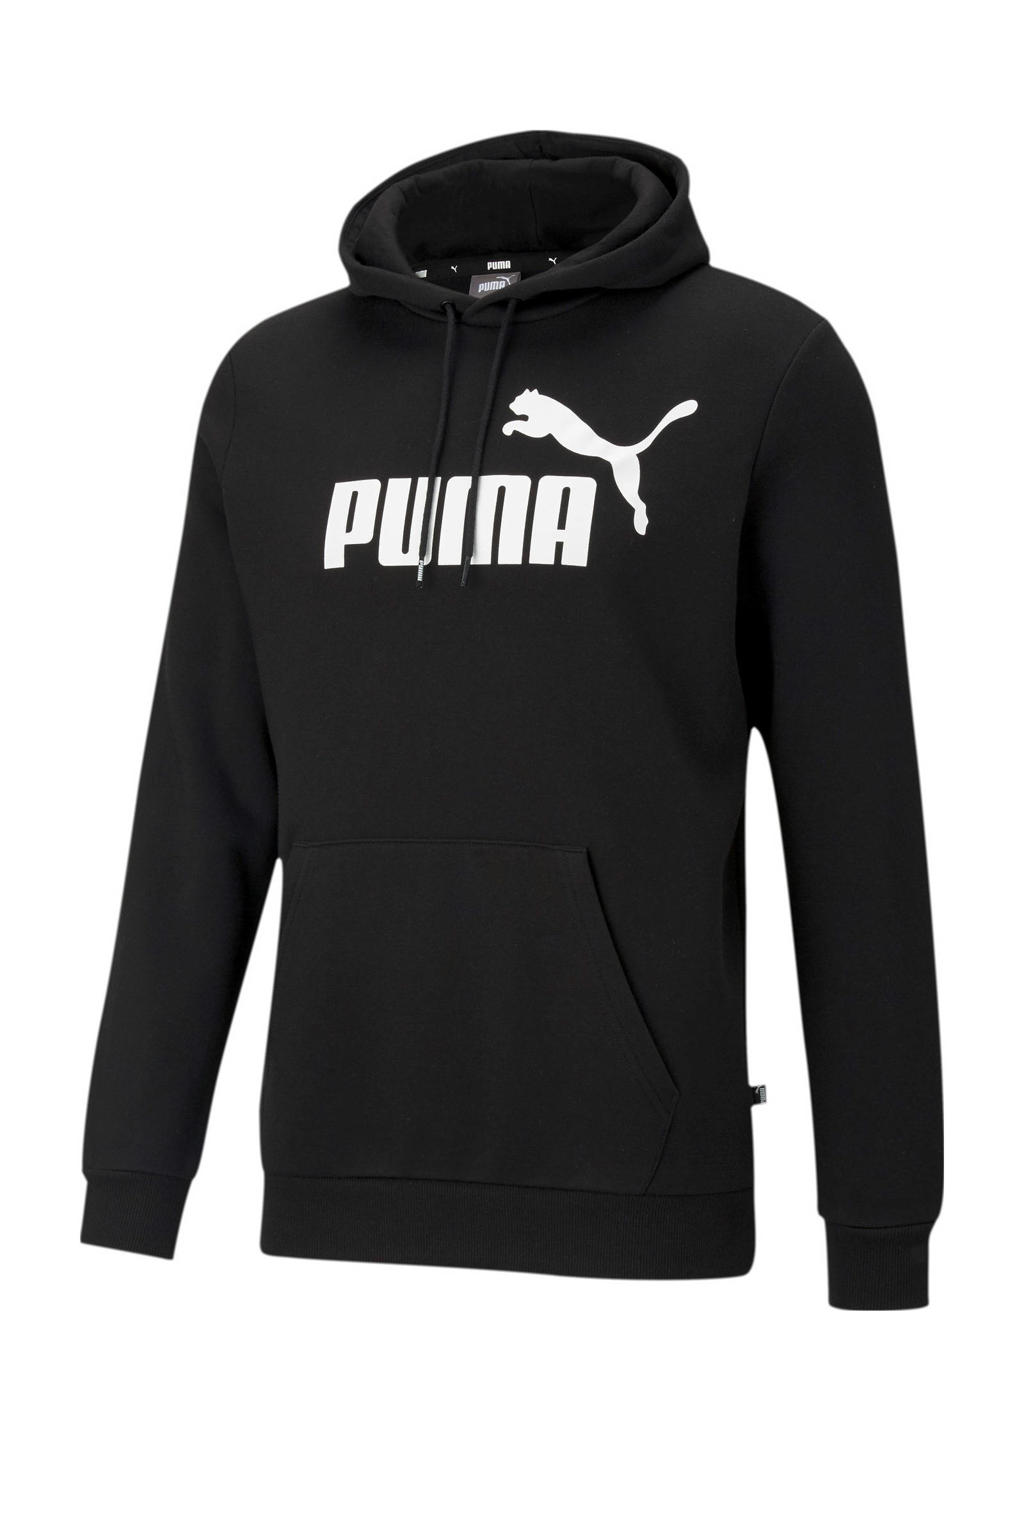 Zwarte heren Puma hoodie van katoen met logo dessin, lange mouwen, capuchon en geribde boorden